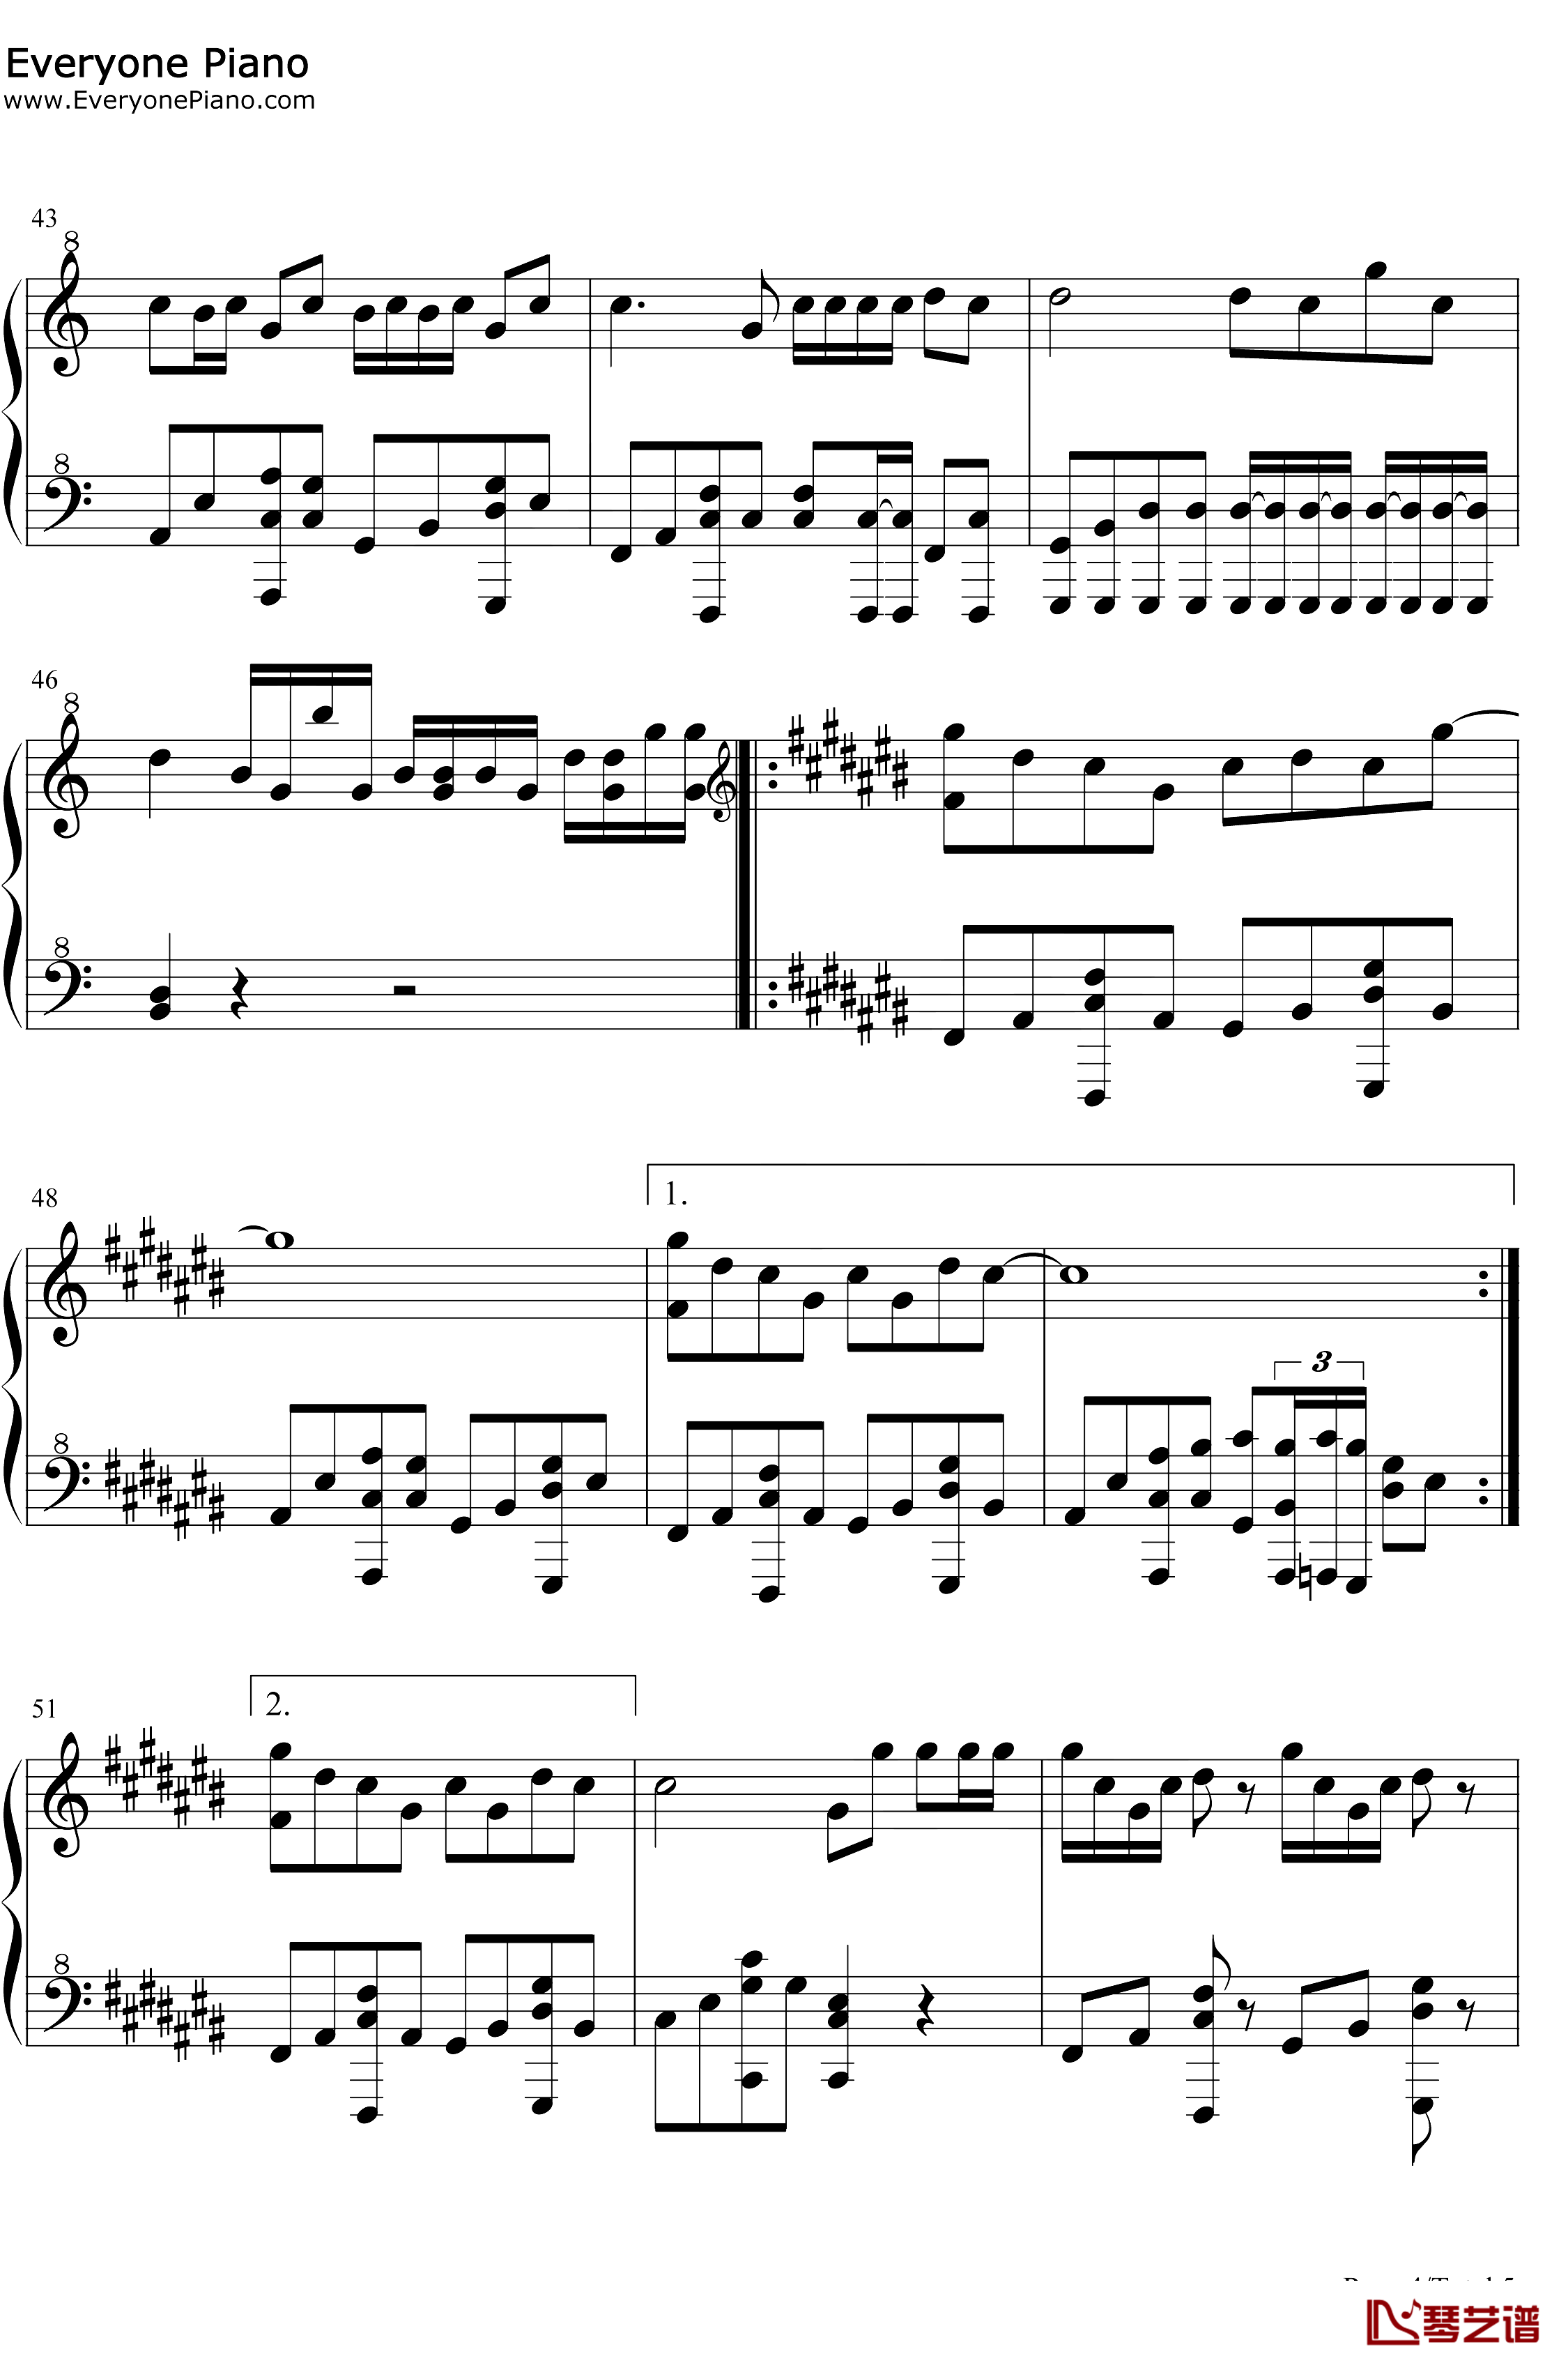 星茶会钢琴谱-灰澈-轻快的钢琴RB曲4